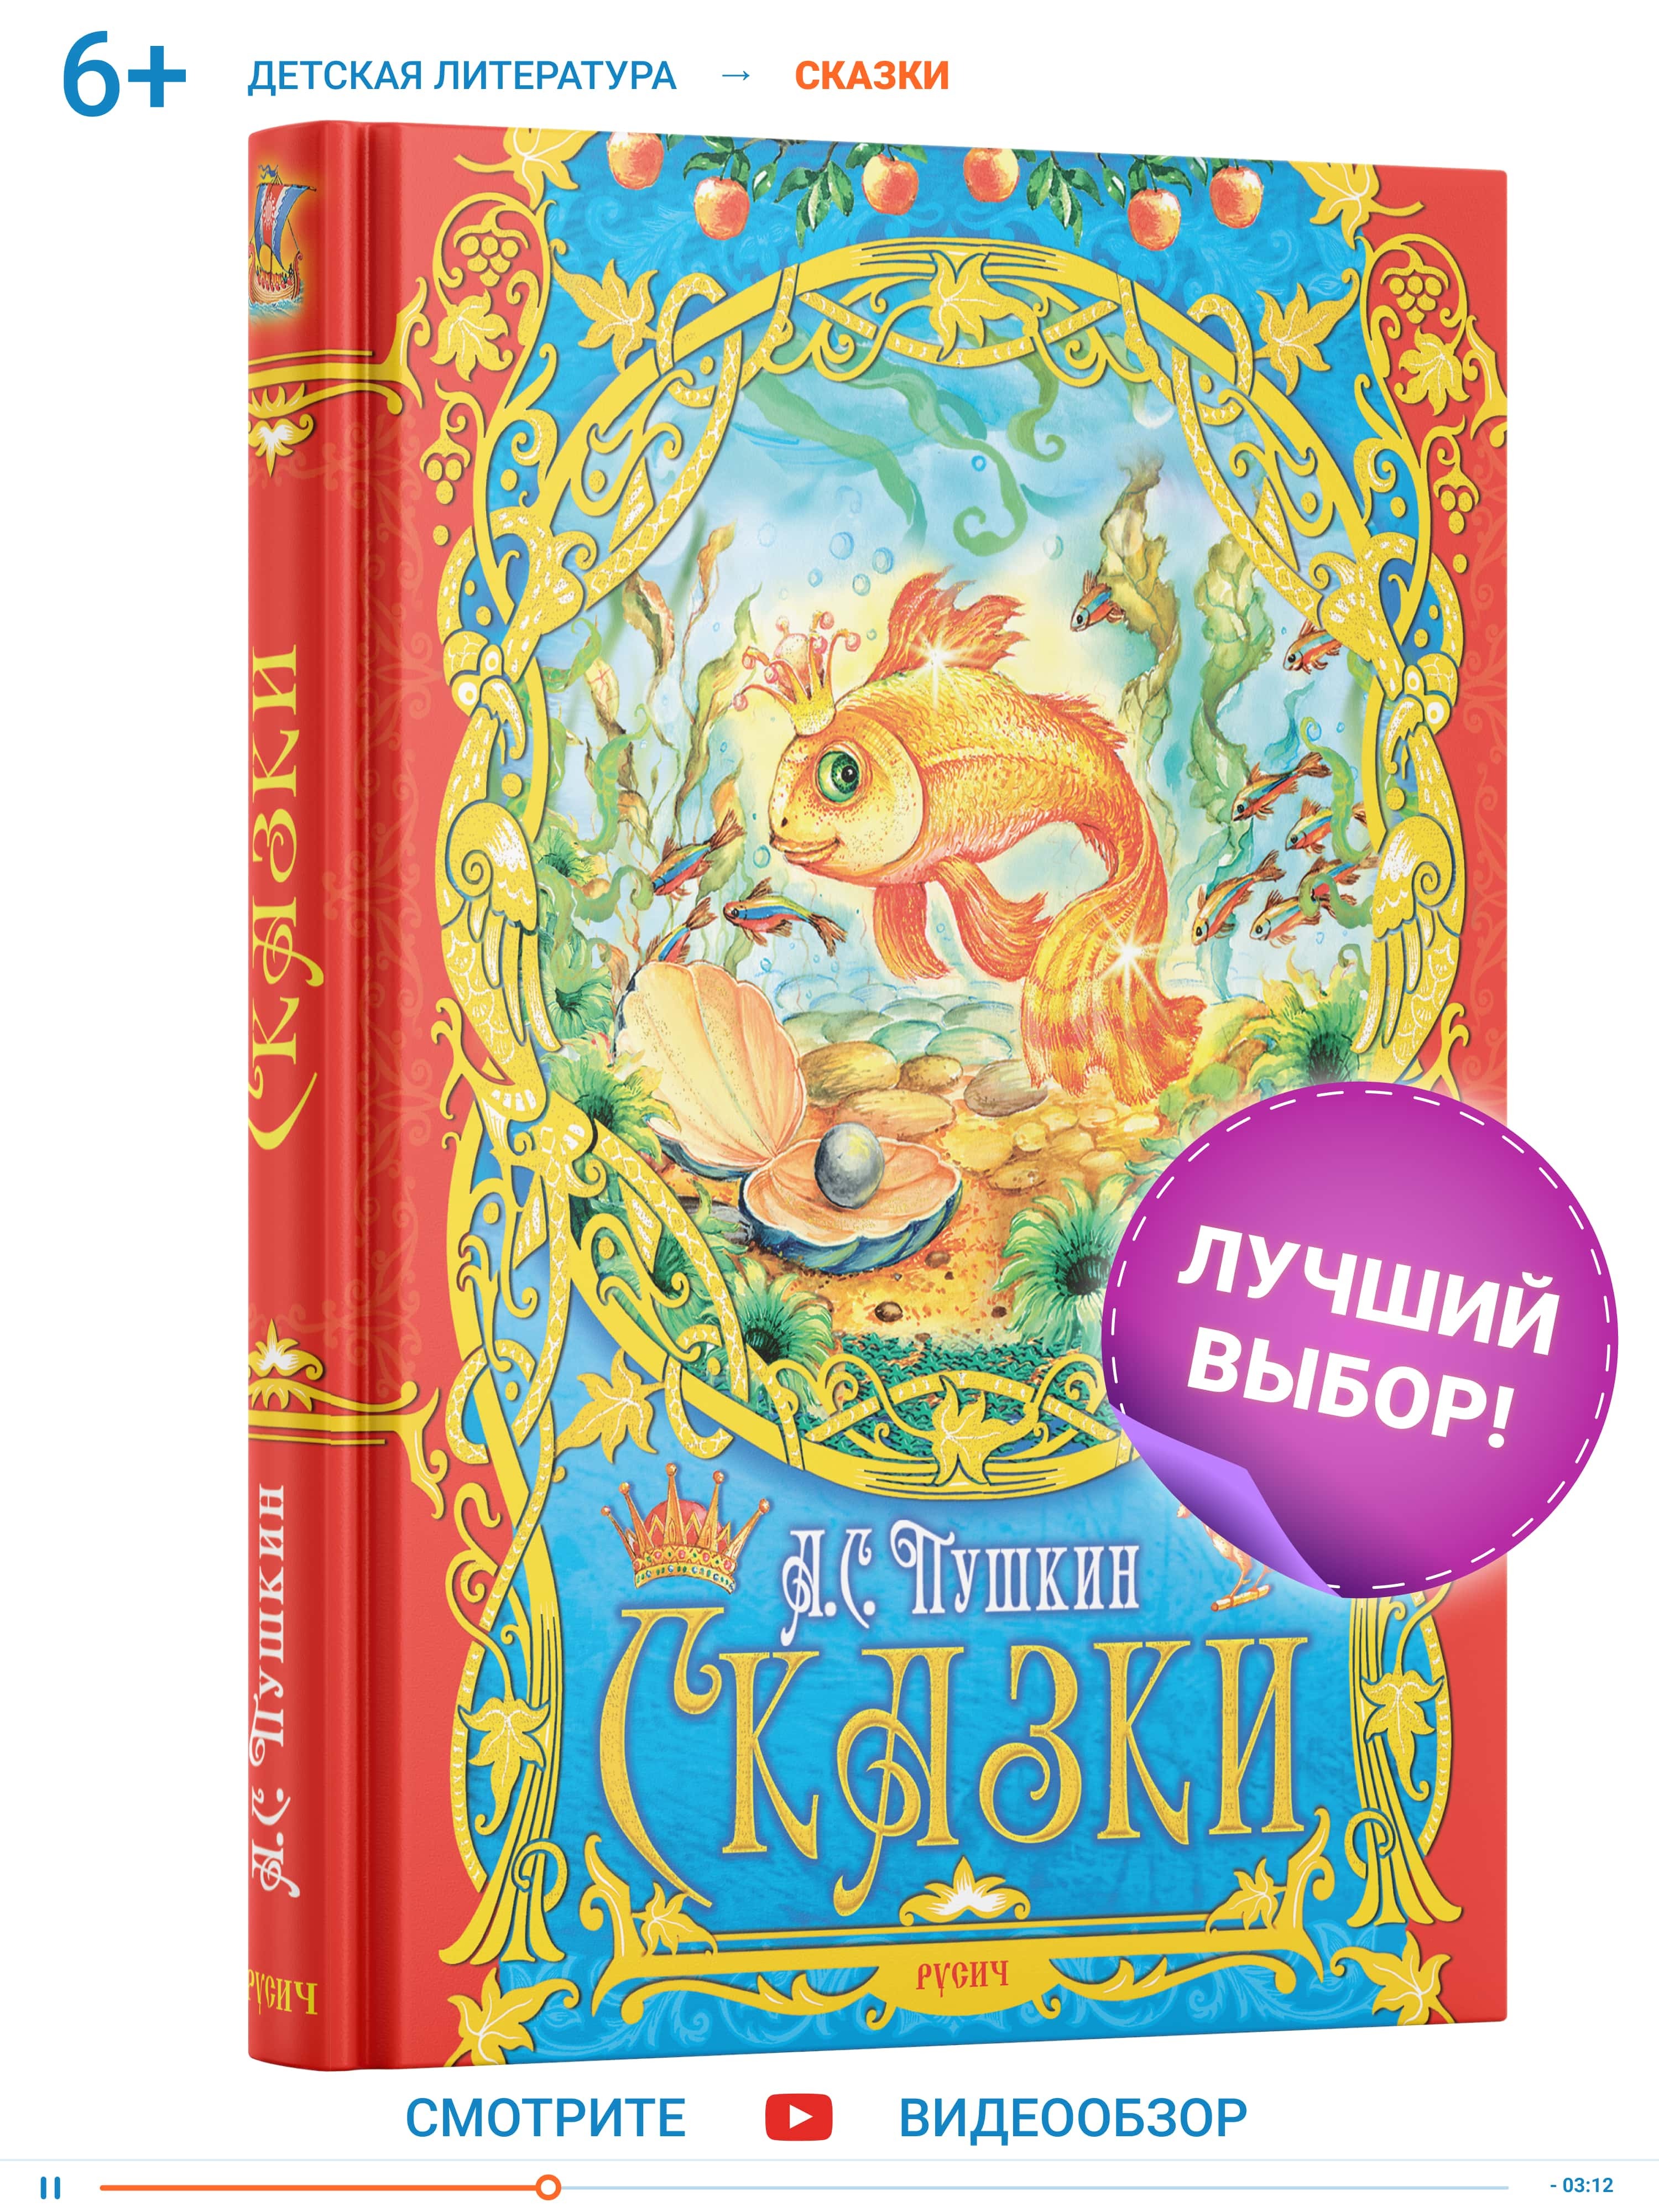 фото Книга для детей сказки пушкин а.с. русич